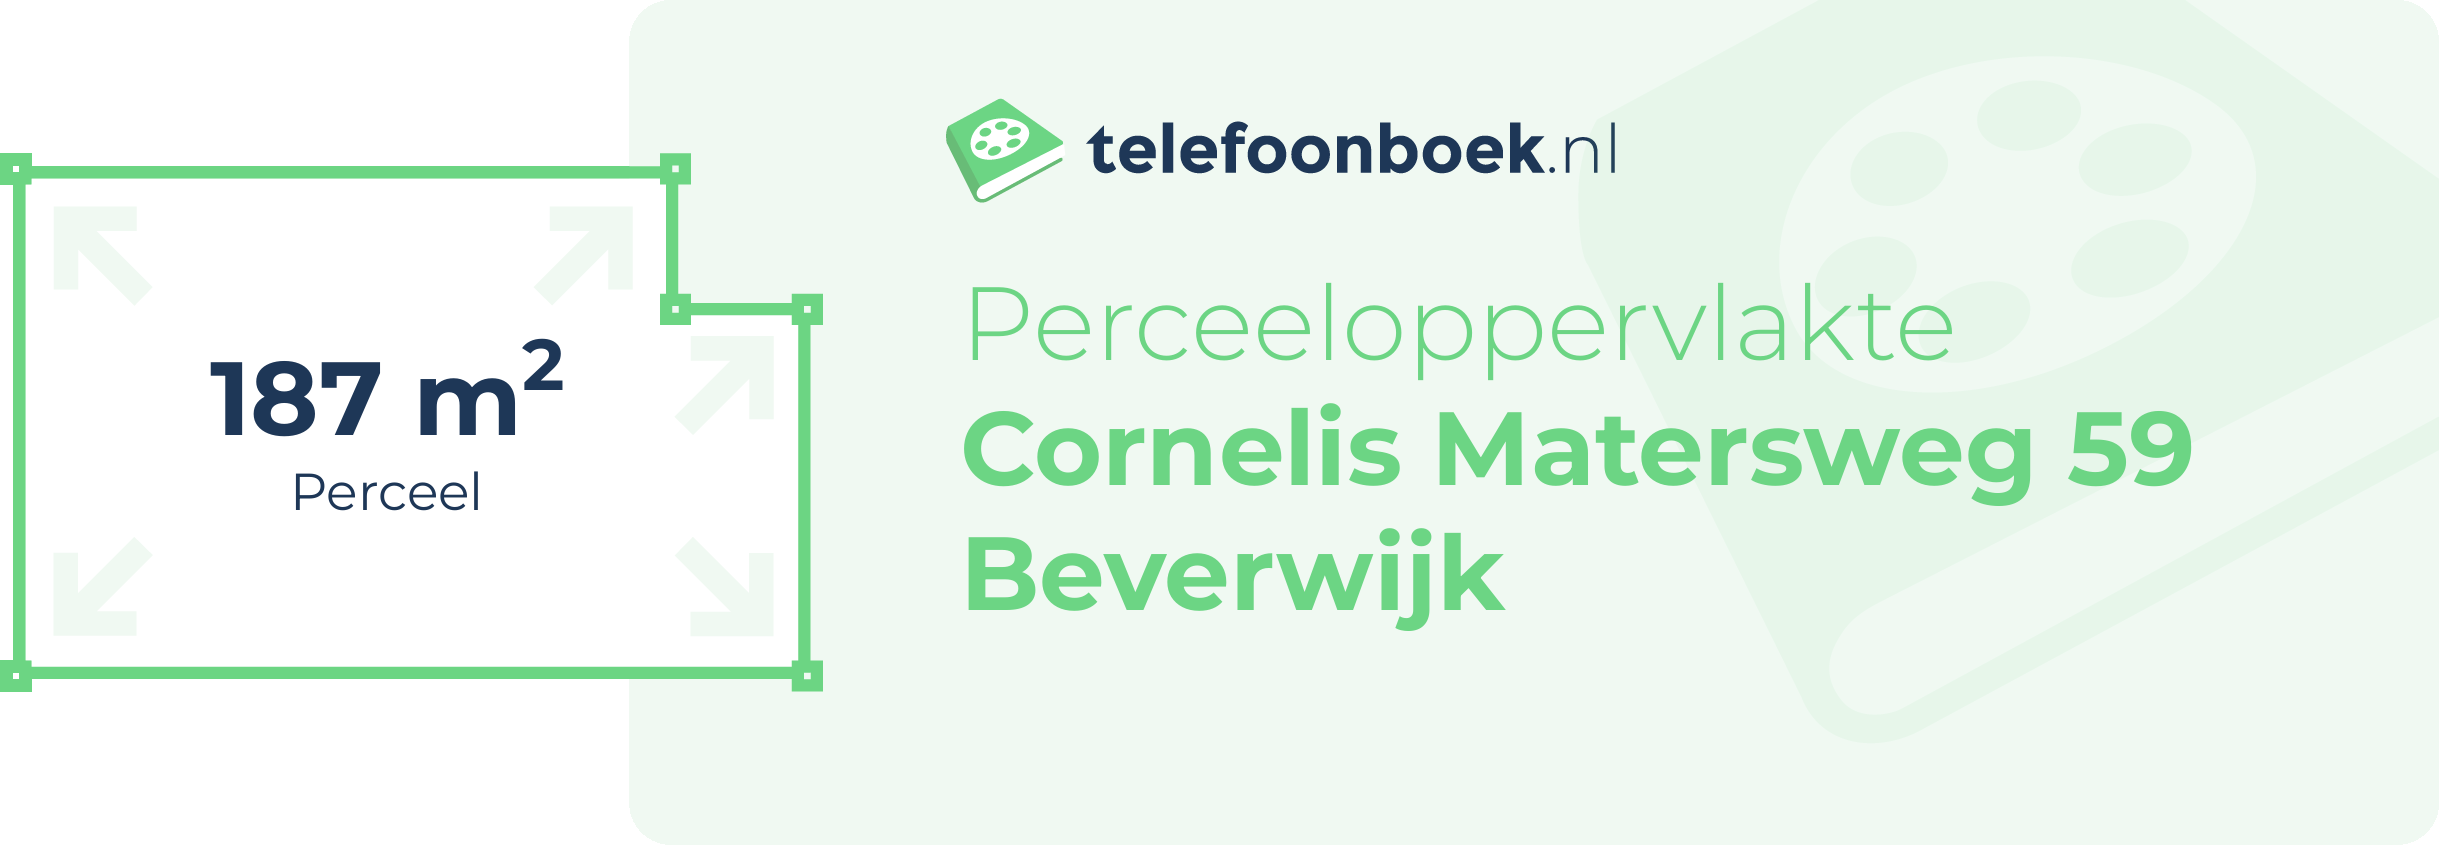 Perceeloppervlakte Cornelis Matersweg 59 Beverwijk